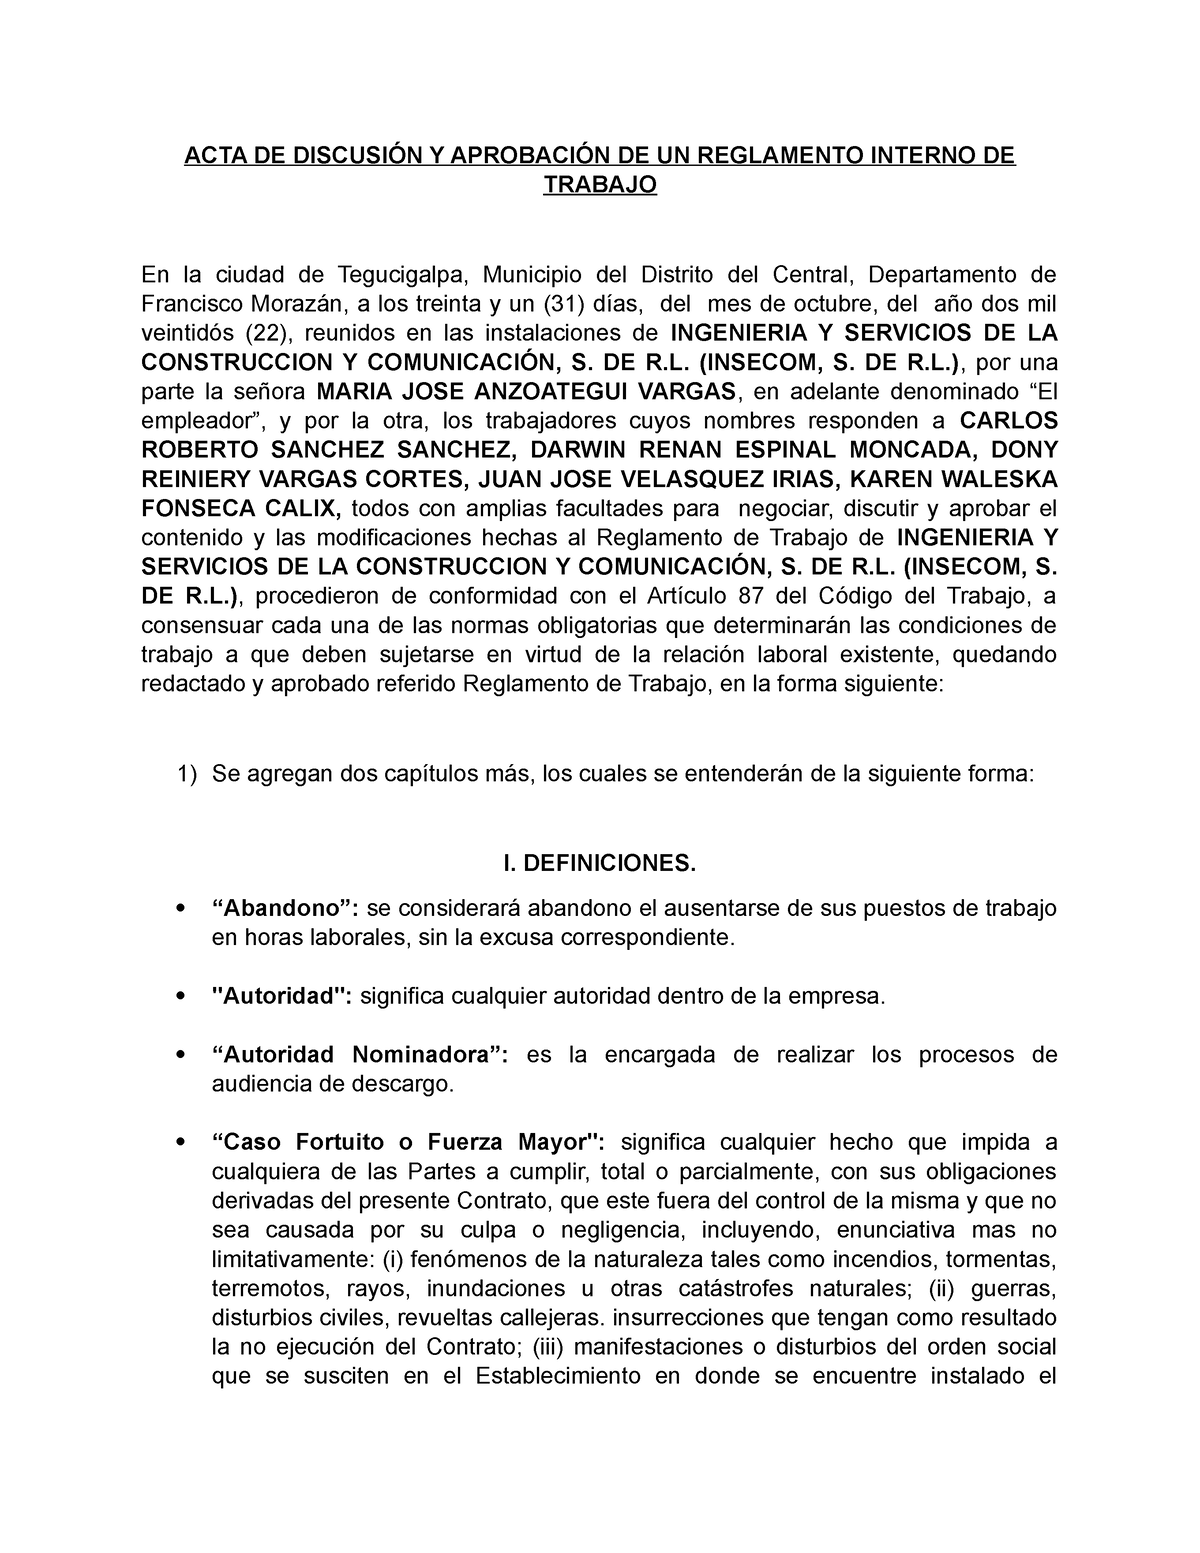 Acta Aprobacion De Reglamento Insecom Acta De DiscusiÓn Y AprobaciÓn De Un Reglamento Interno 7262